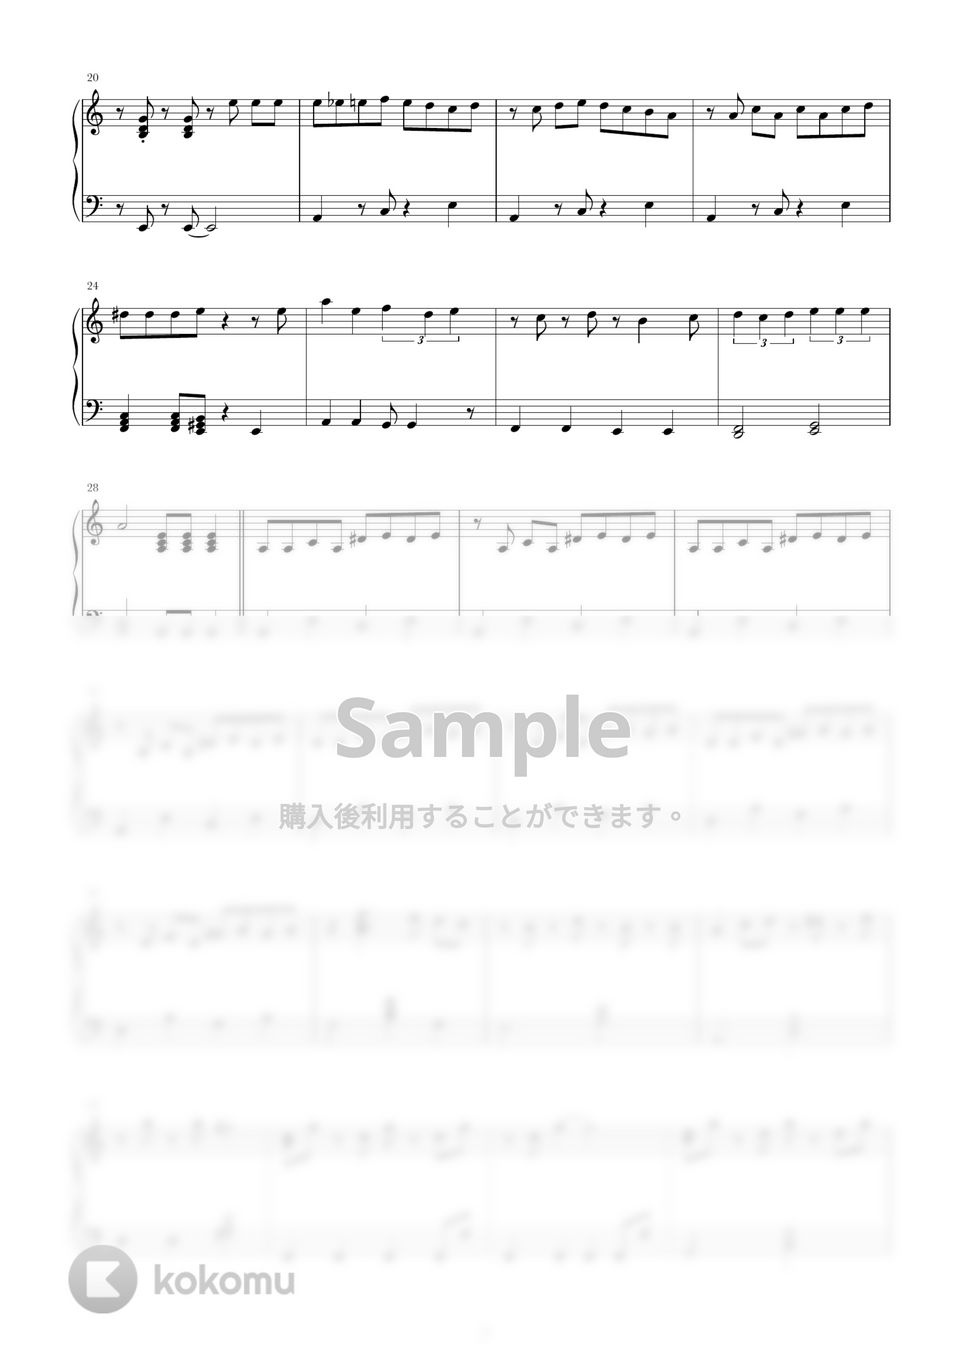 古川貴之 - 全力キング (戦隊、ヒーロー、TV,ピアノソロ) by harupi